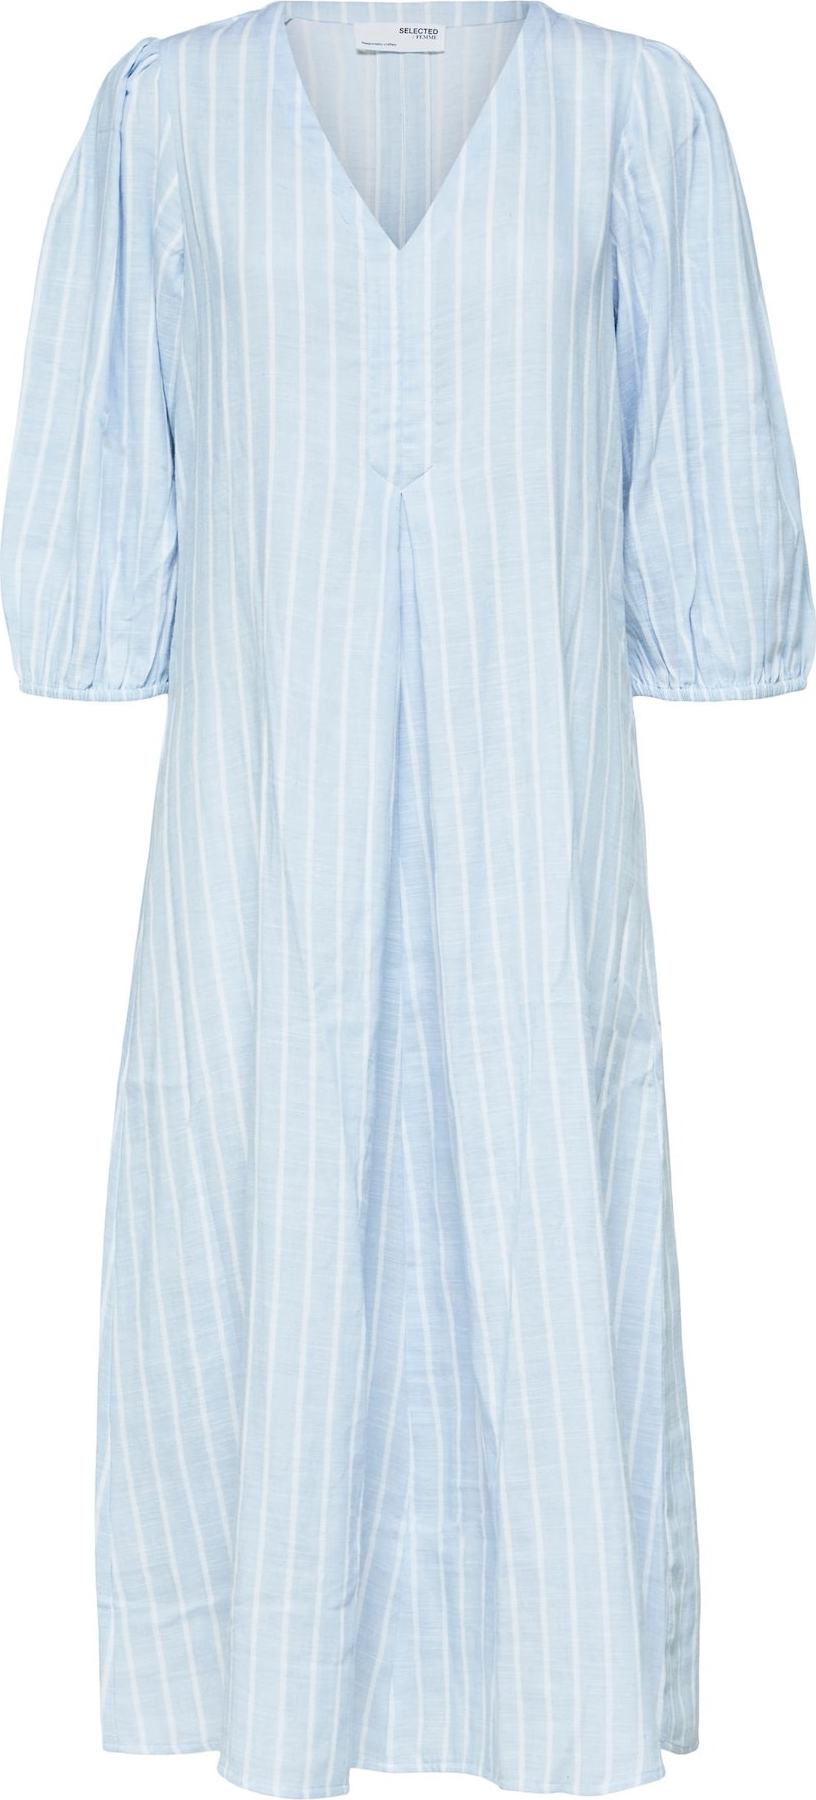 SELECTED FEMME Košilové šaty 'Helina' bílá / kouřově modrá